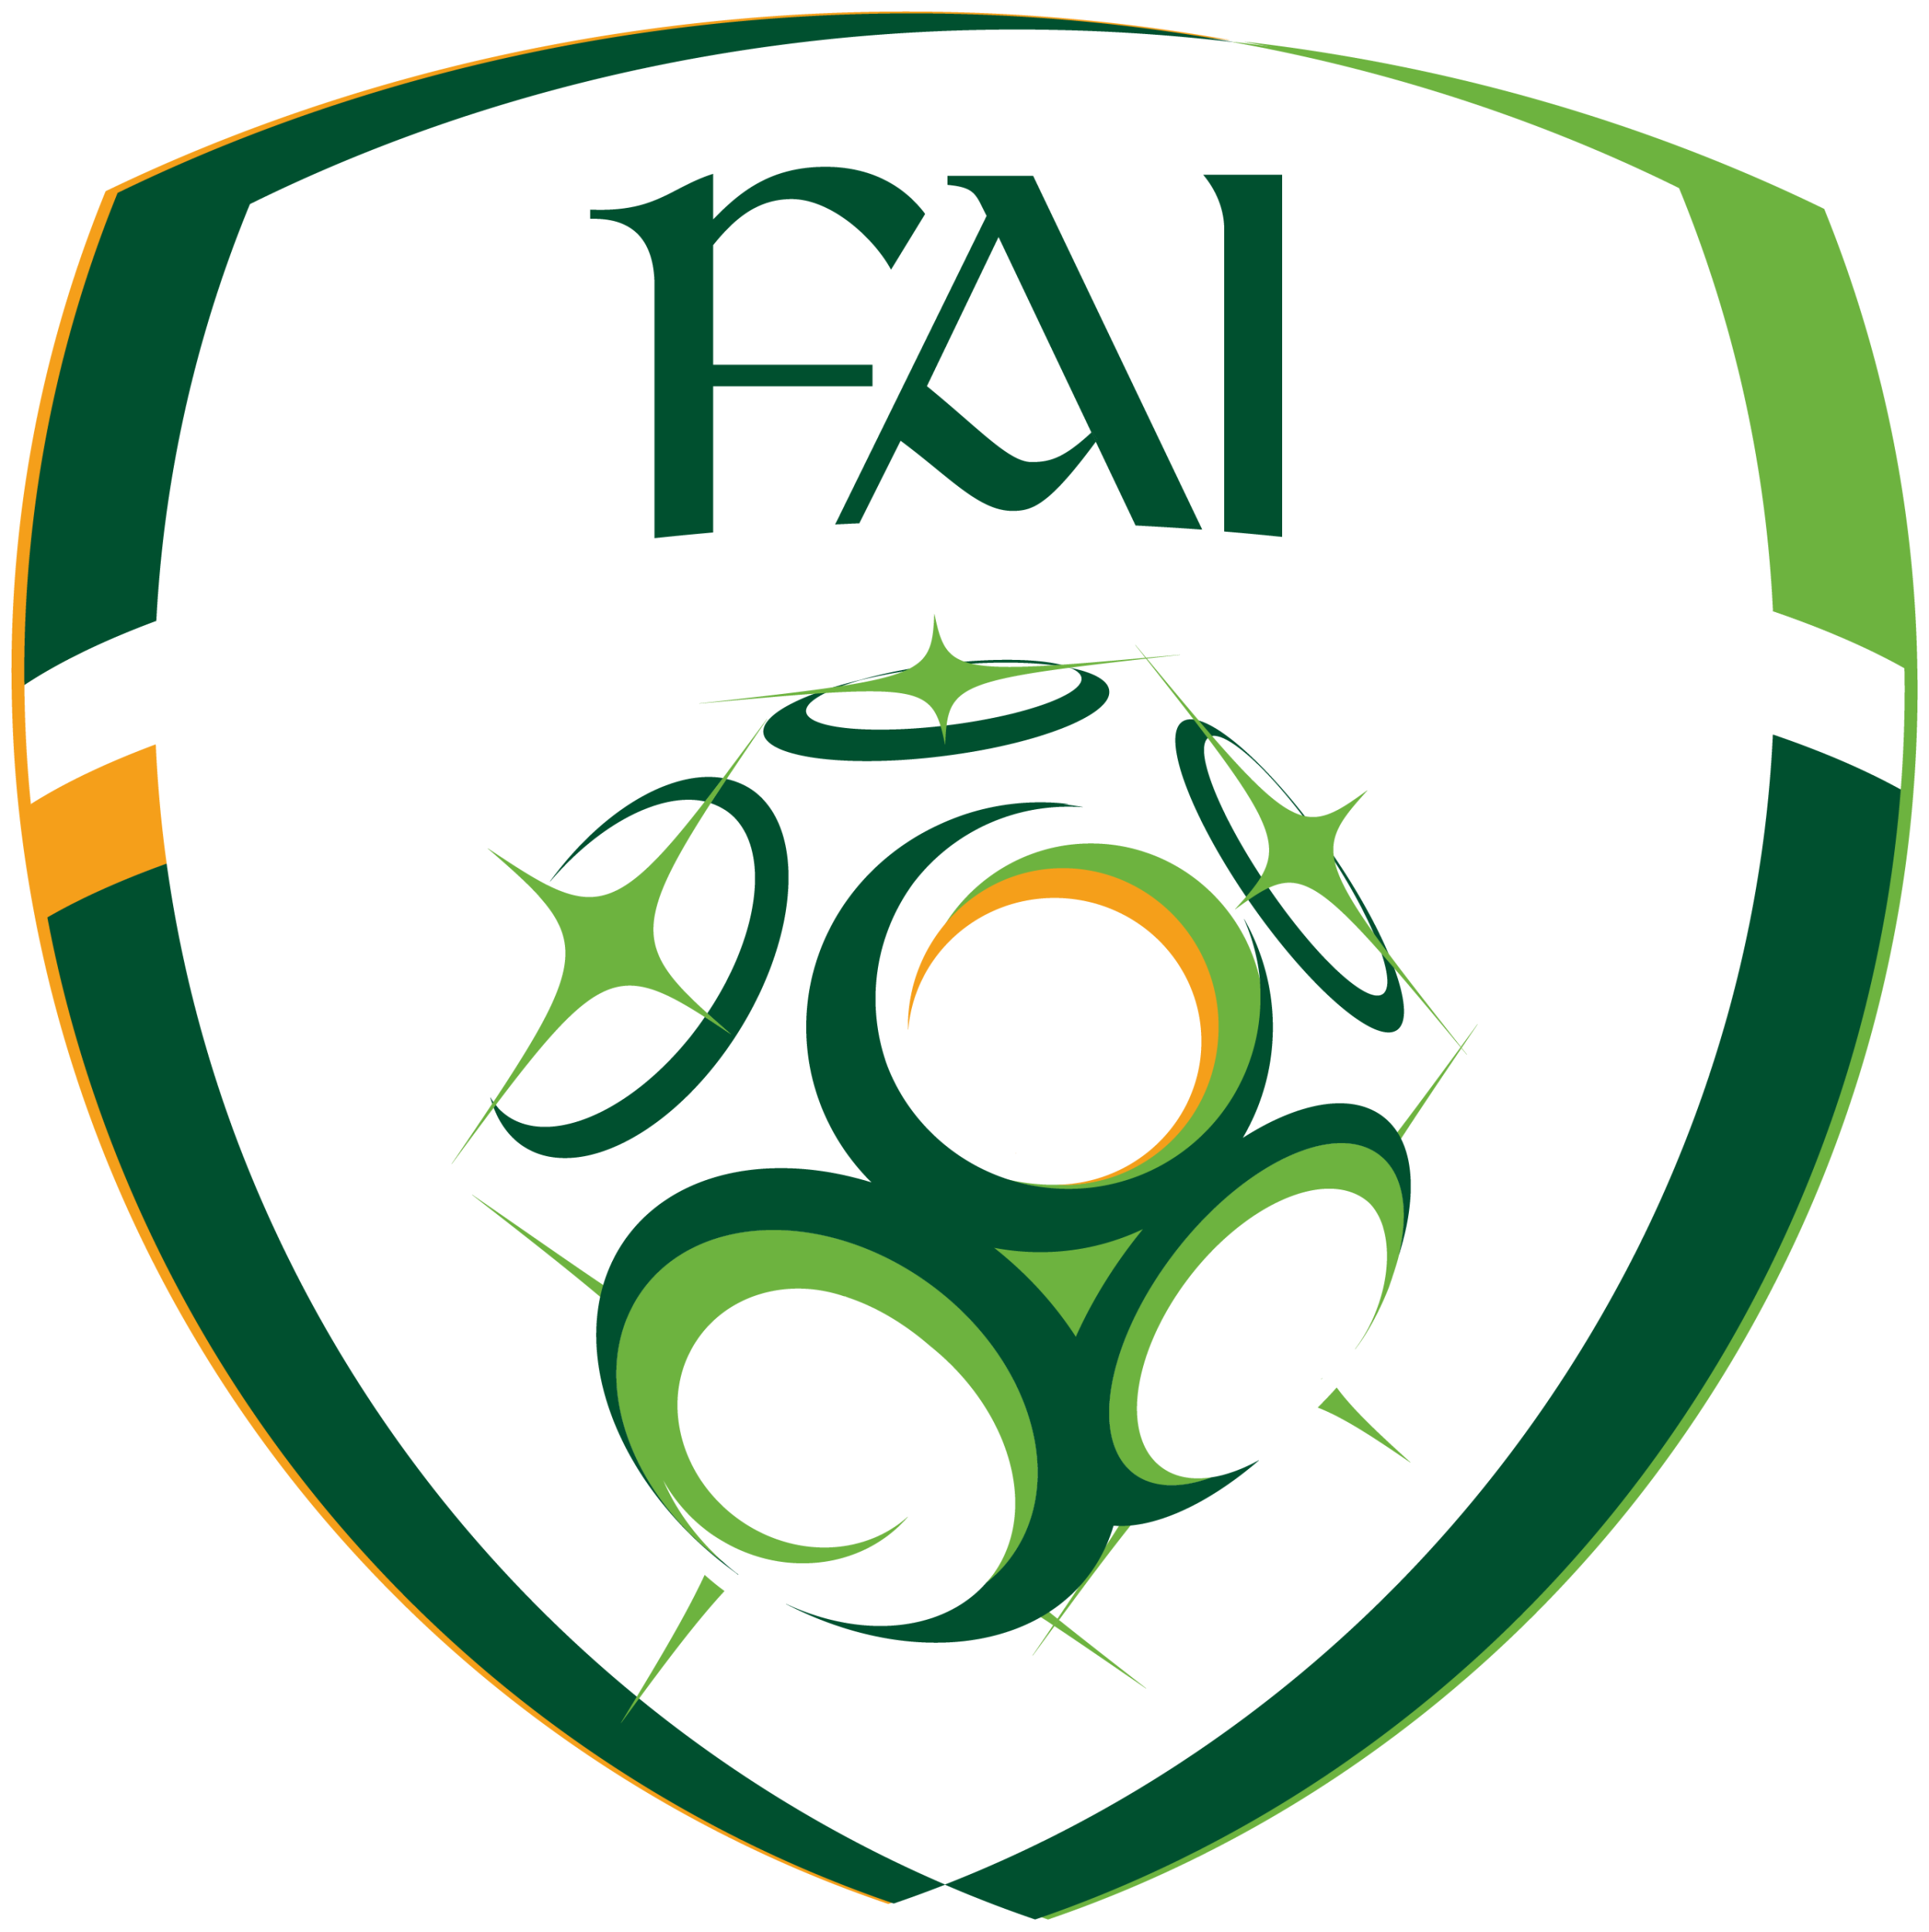 愛爾蘭足球協會(負責愛爾蘭共和國足球運動的法定機構)